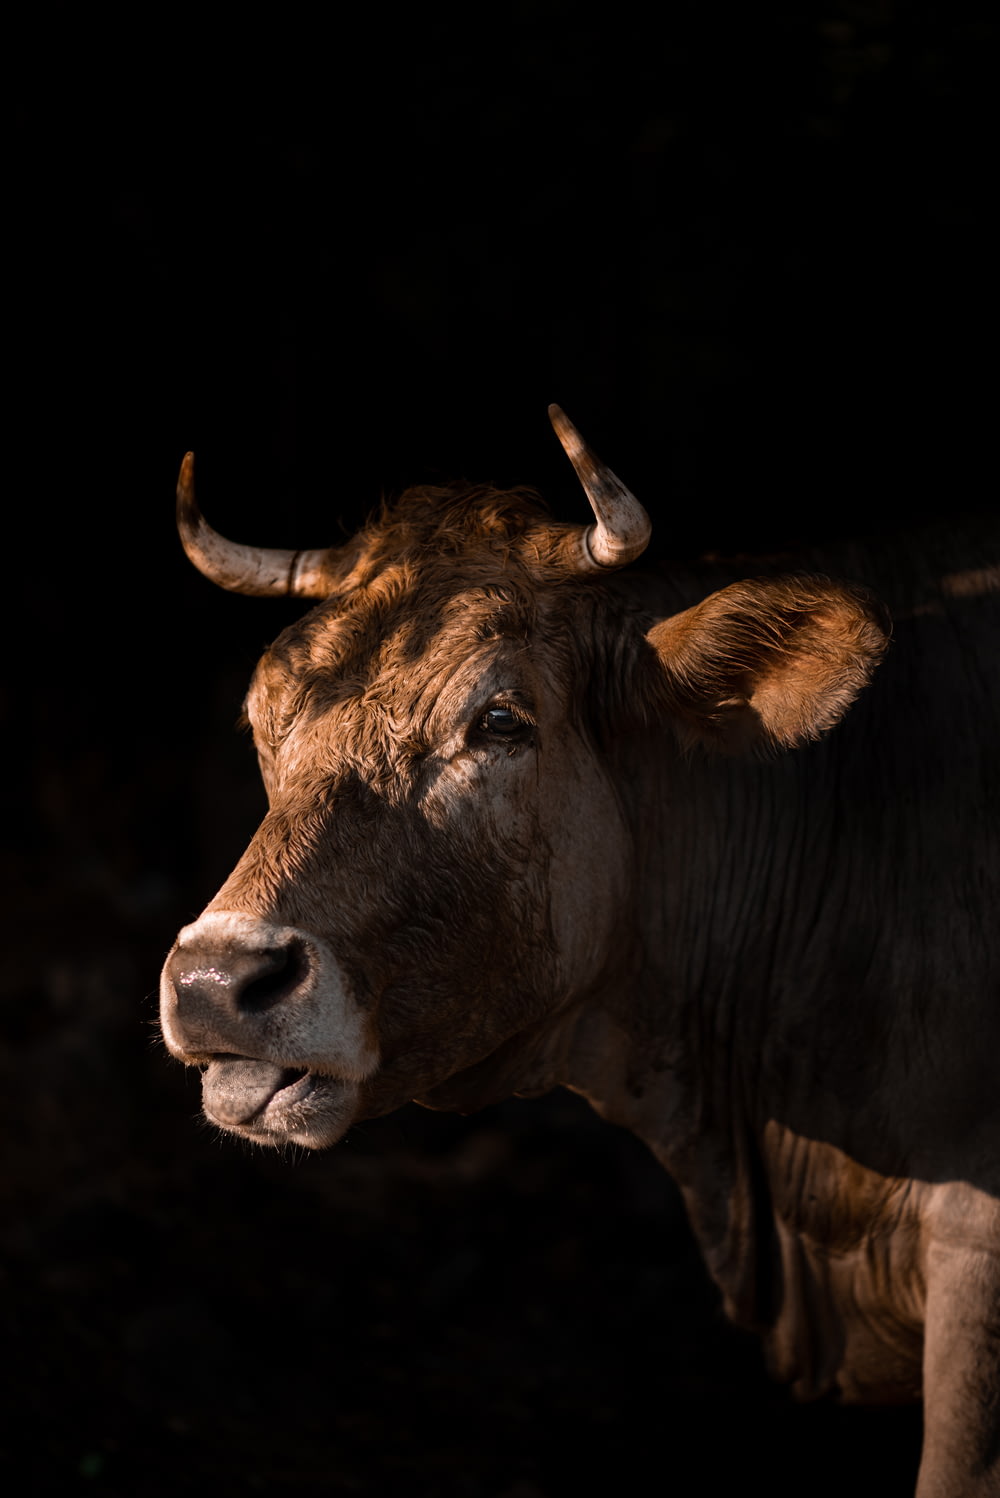 クローズアップ写真の茶色の牛